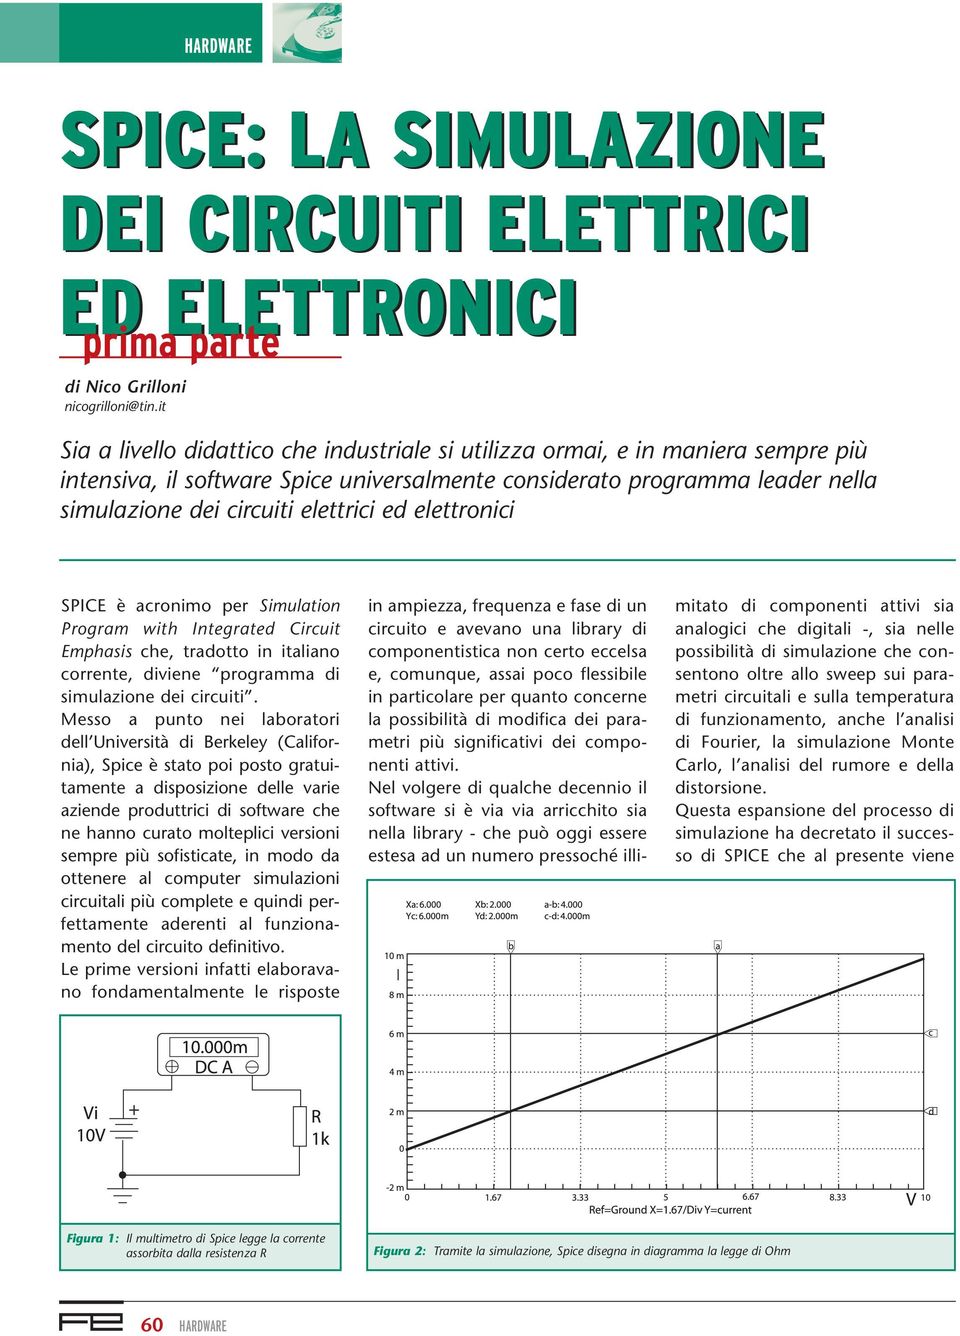 ed elettronici SPICE è acronimo per Simulation Program with Integrated Circuit Emphasis che, tradotto in italiano corrente, diviene programma di simulazione dei circuiti.